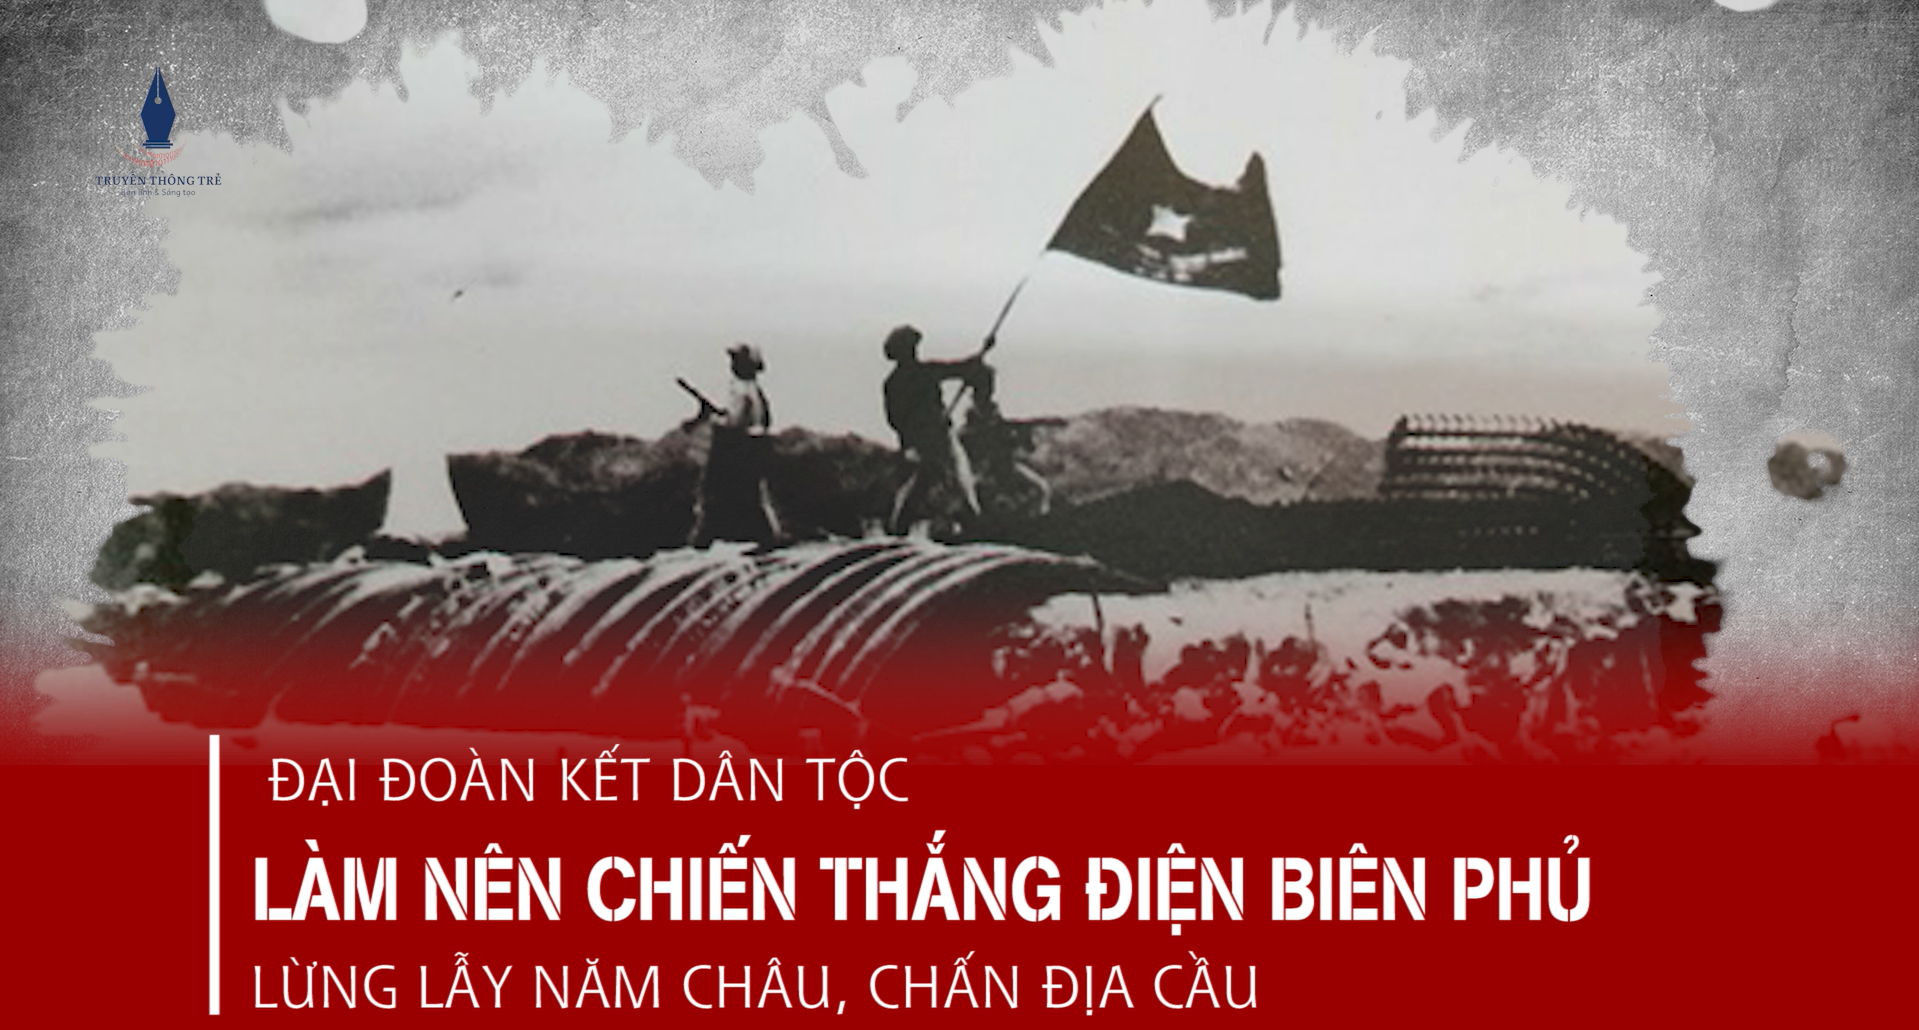 Đại đoàn kết dân tộc - một trong những nhân tố quyết định làm nên chiến thắng Điện Biên Phủ "lừng lẫy năm châu, chấn động địa cầu"